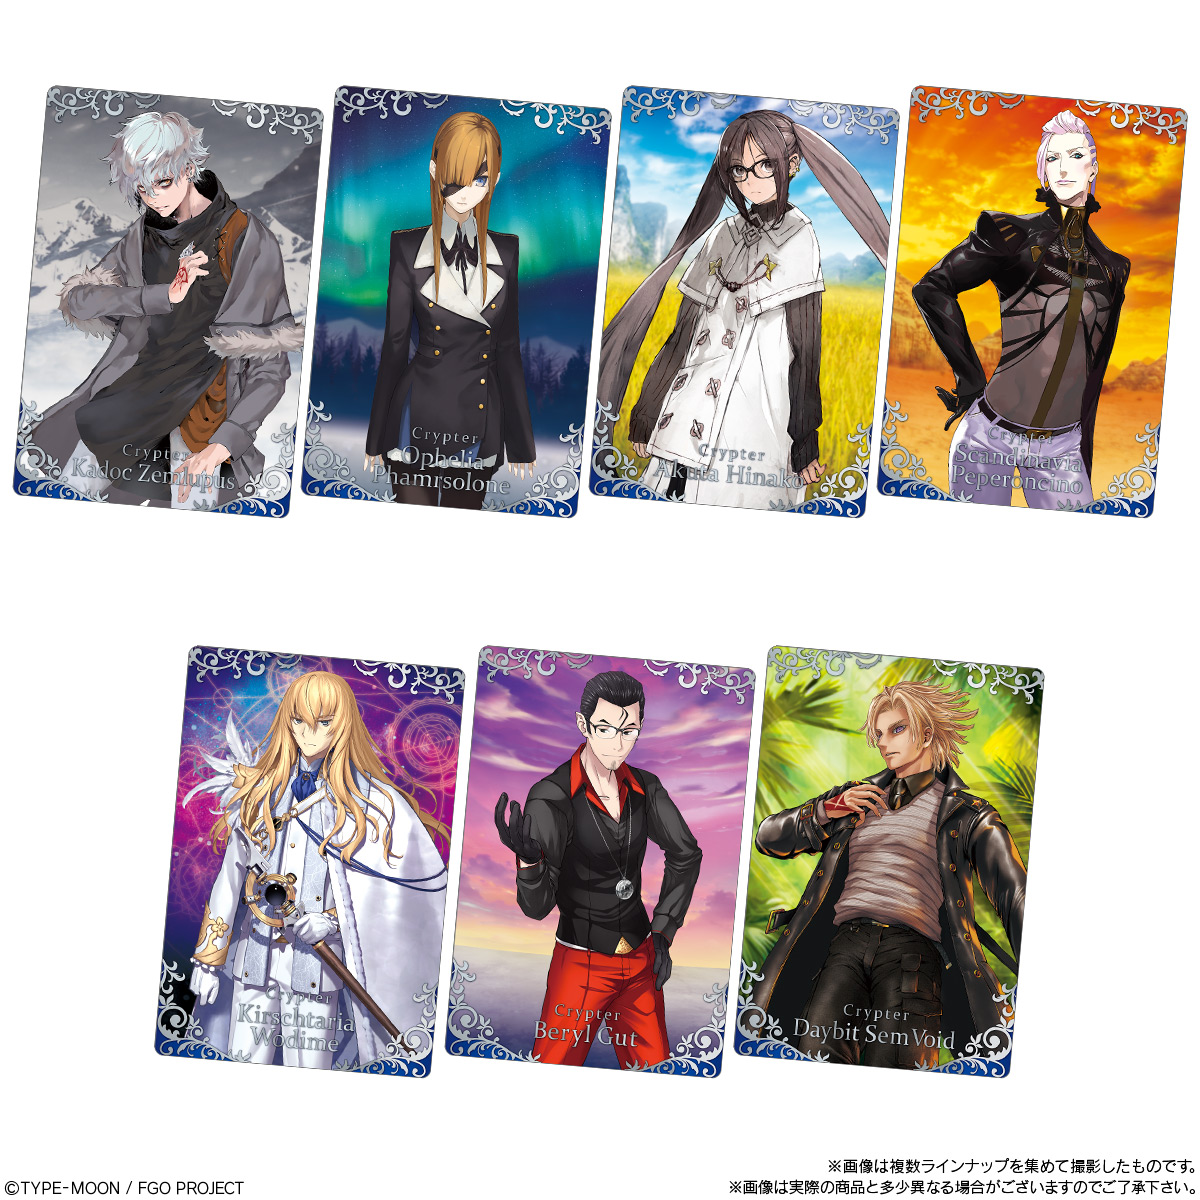 【食玩】Fate/Grand Order『Fate/Grand Order ウエハース13』20個入りBOX-008